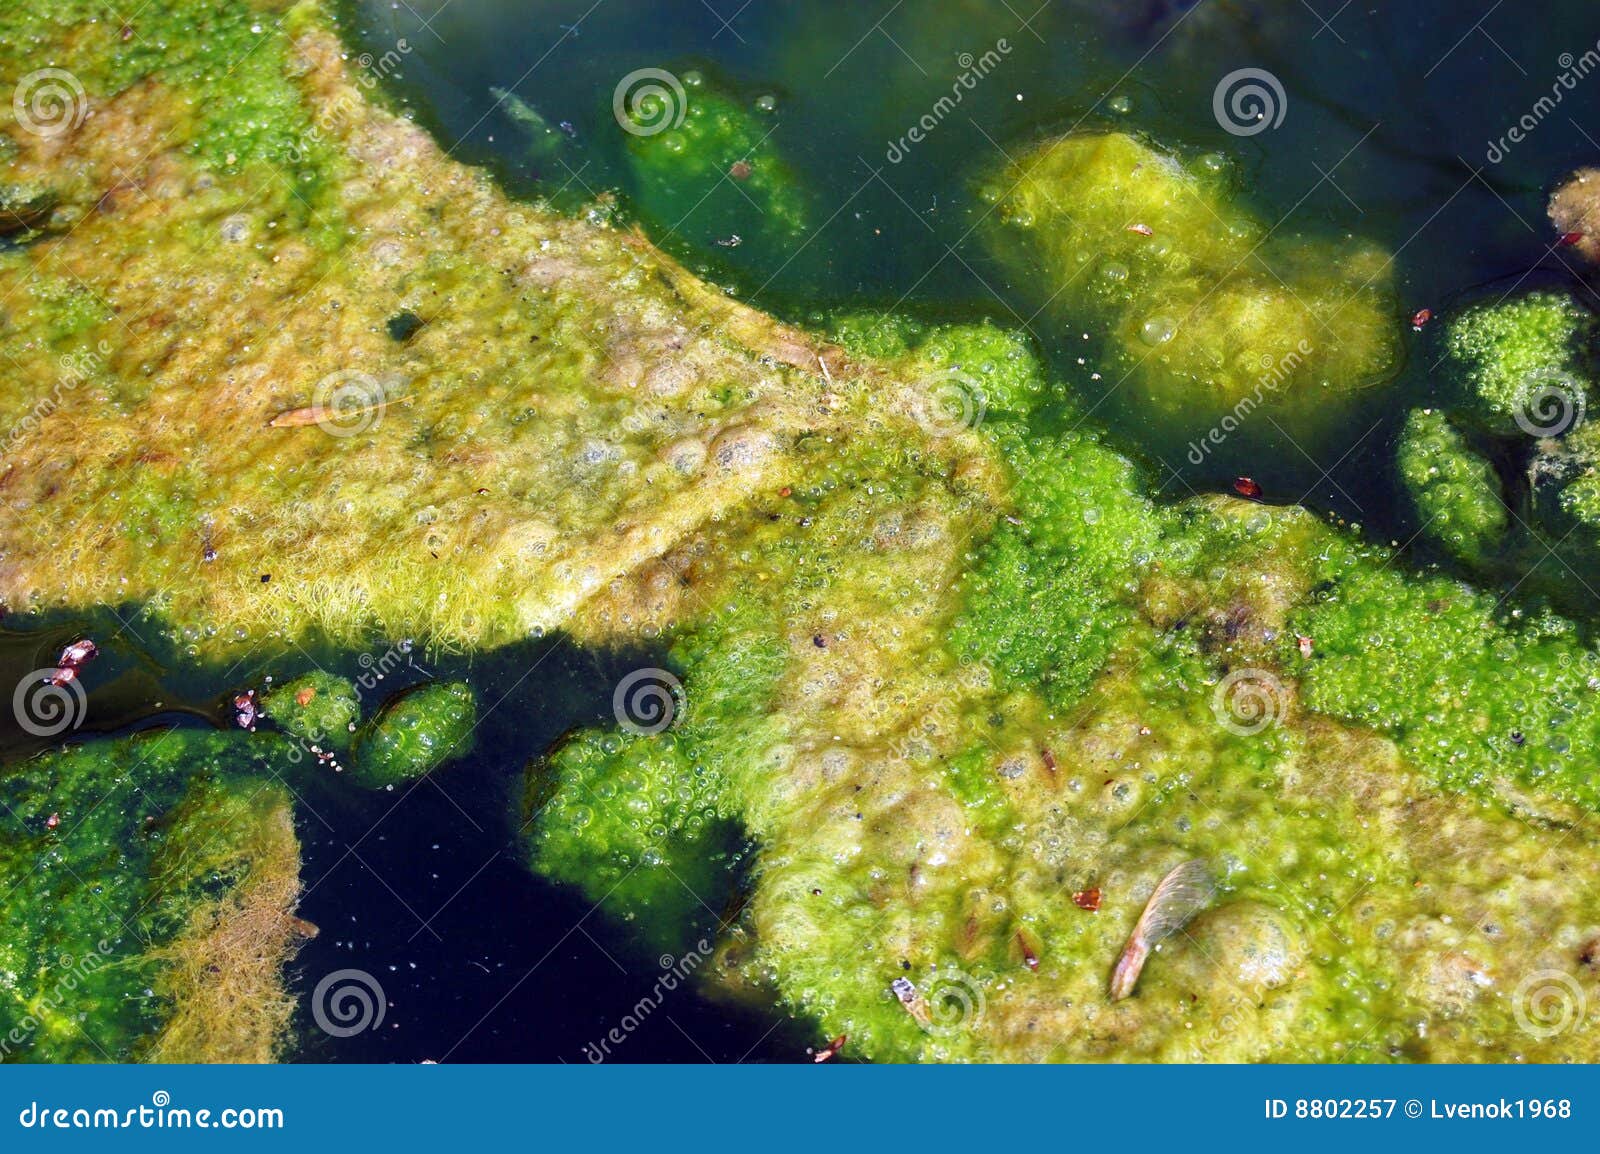 algae and pond scum